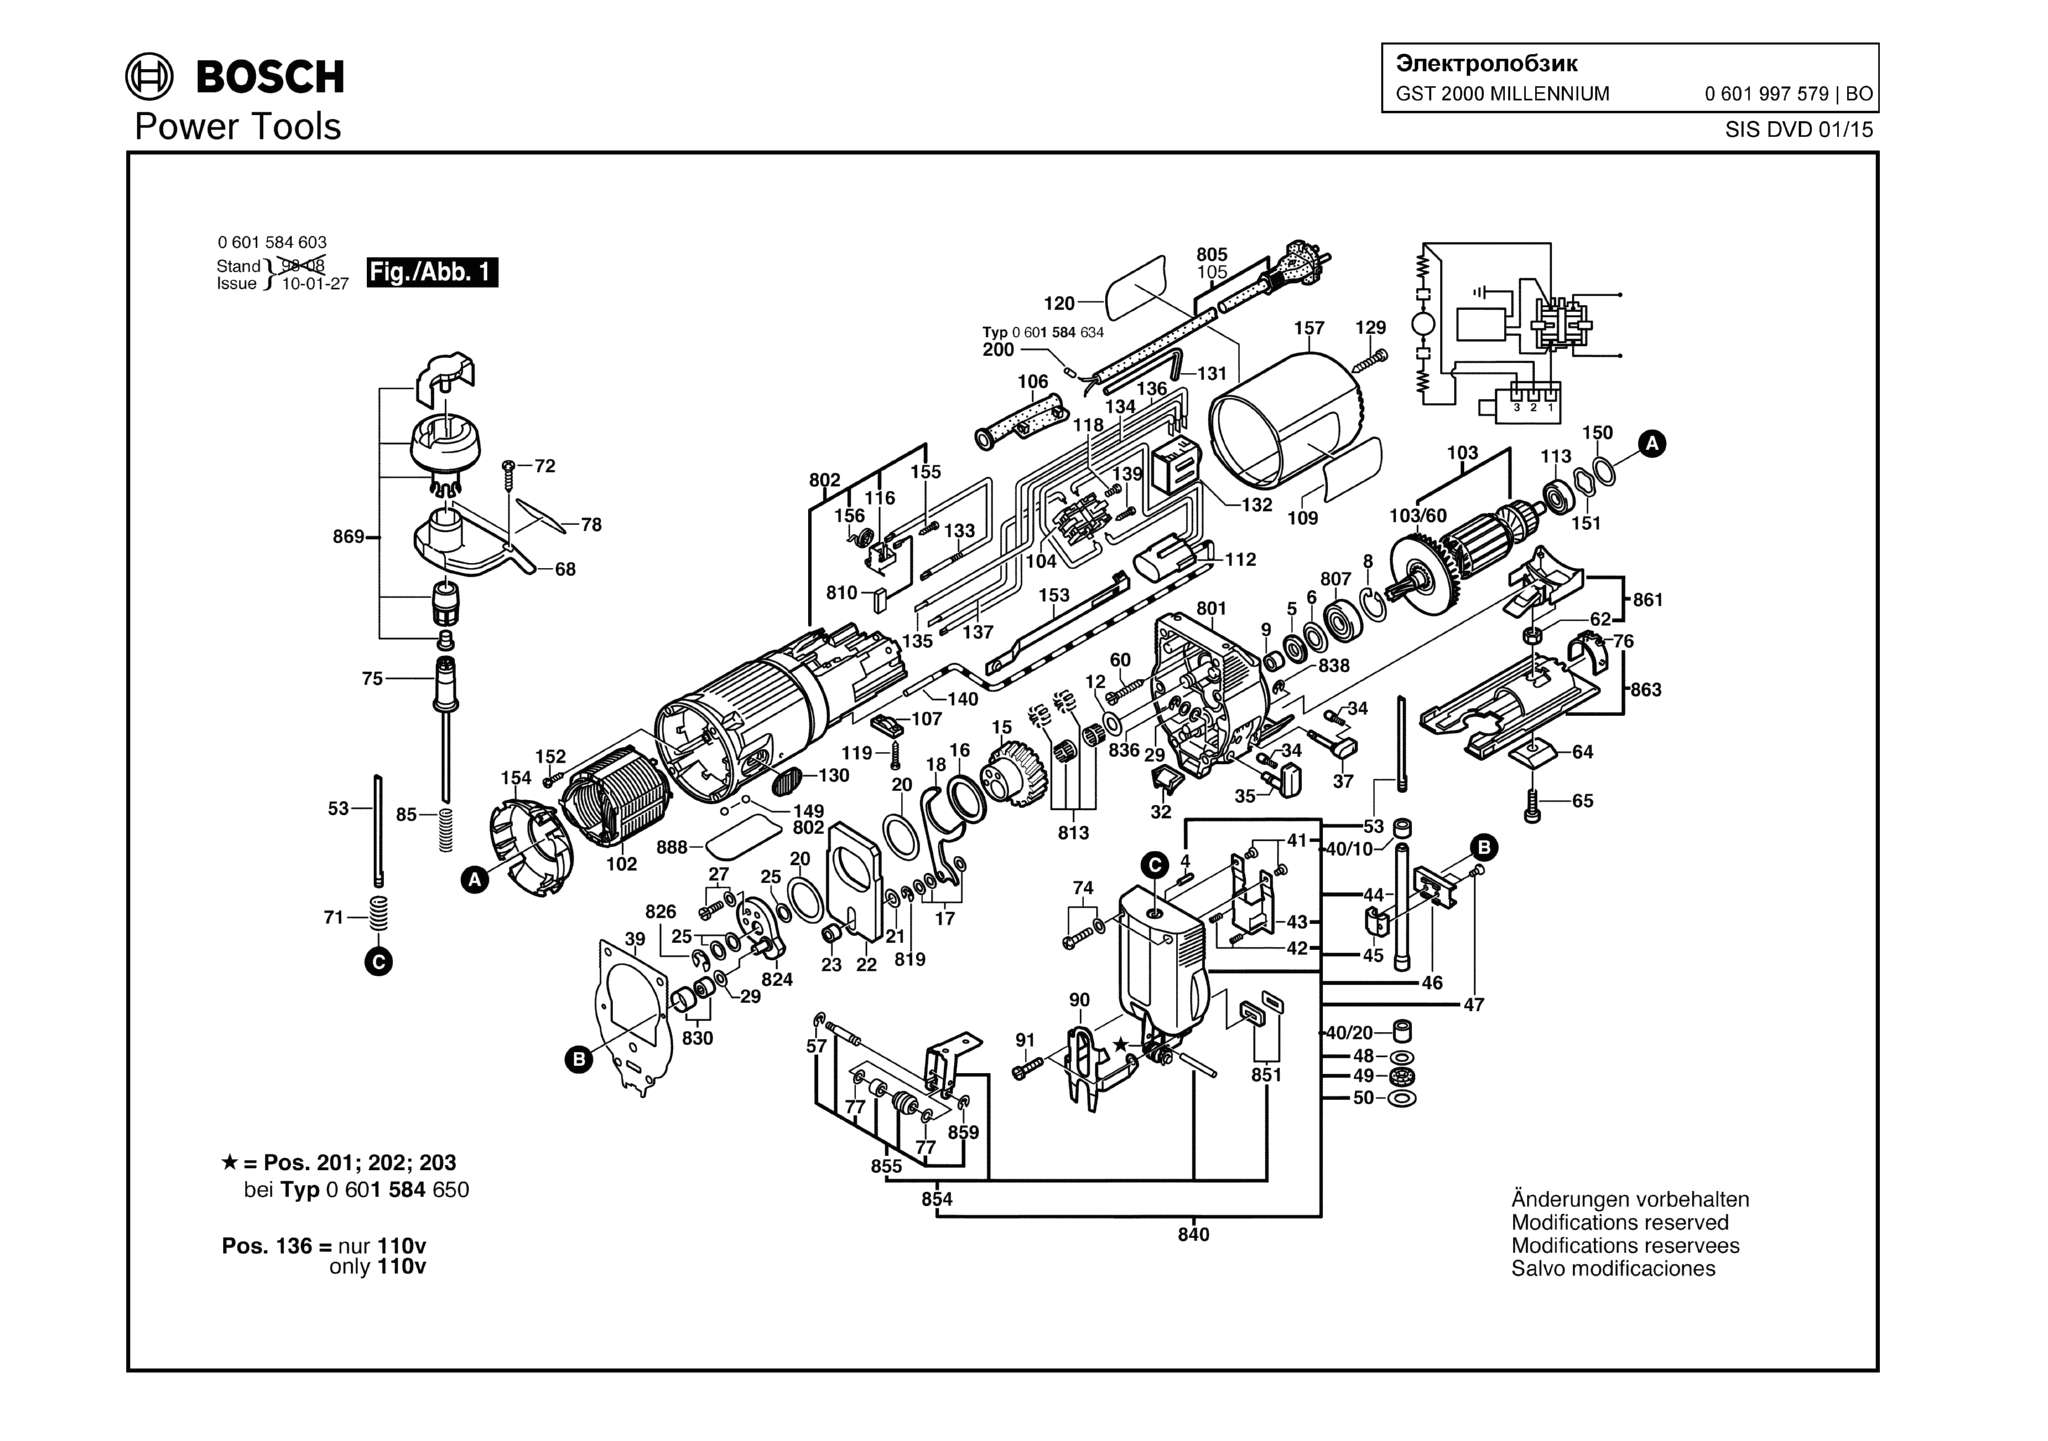 Запчасти, схема и деталировка Bosch GST 2000 MILLENNIUM (ТИП 0601997579)